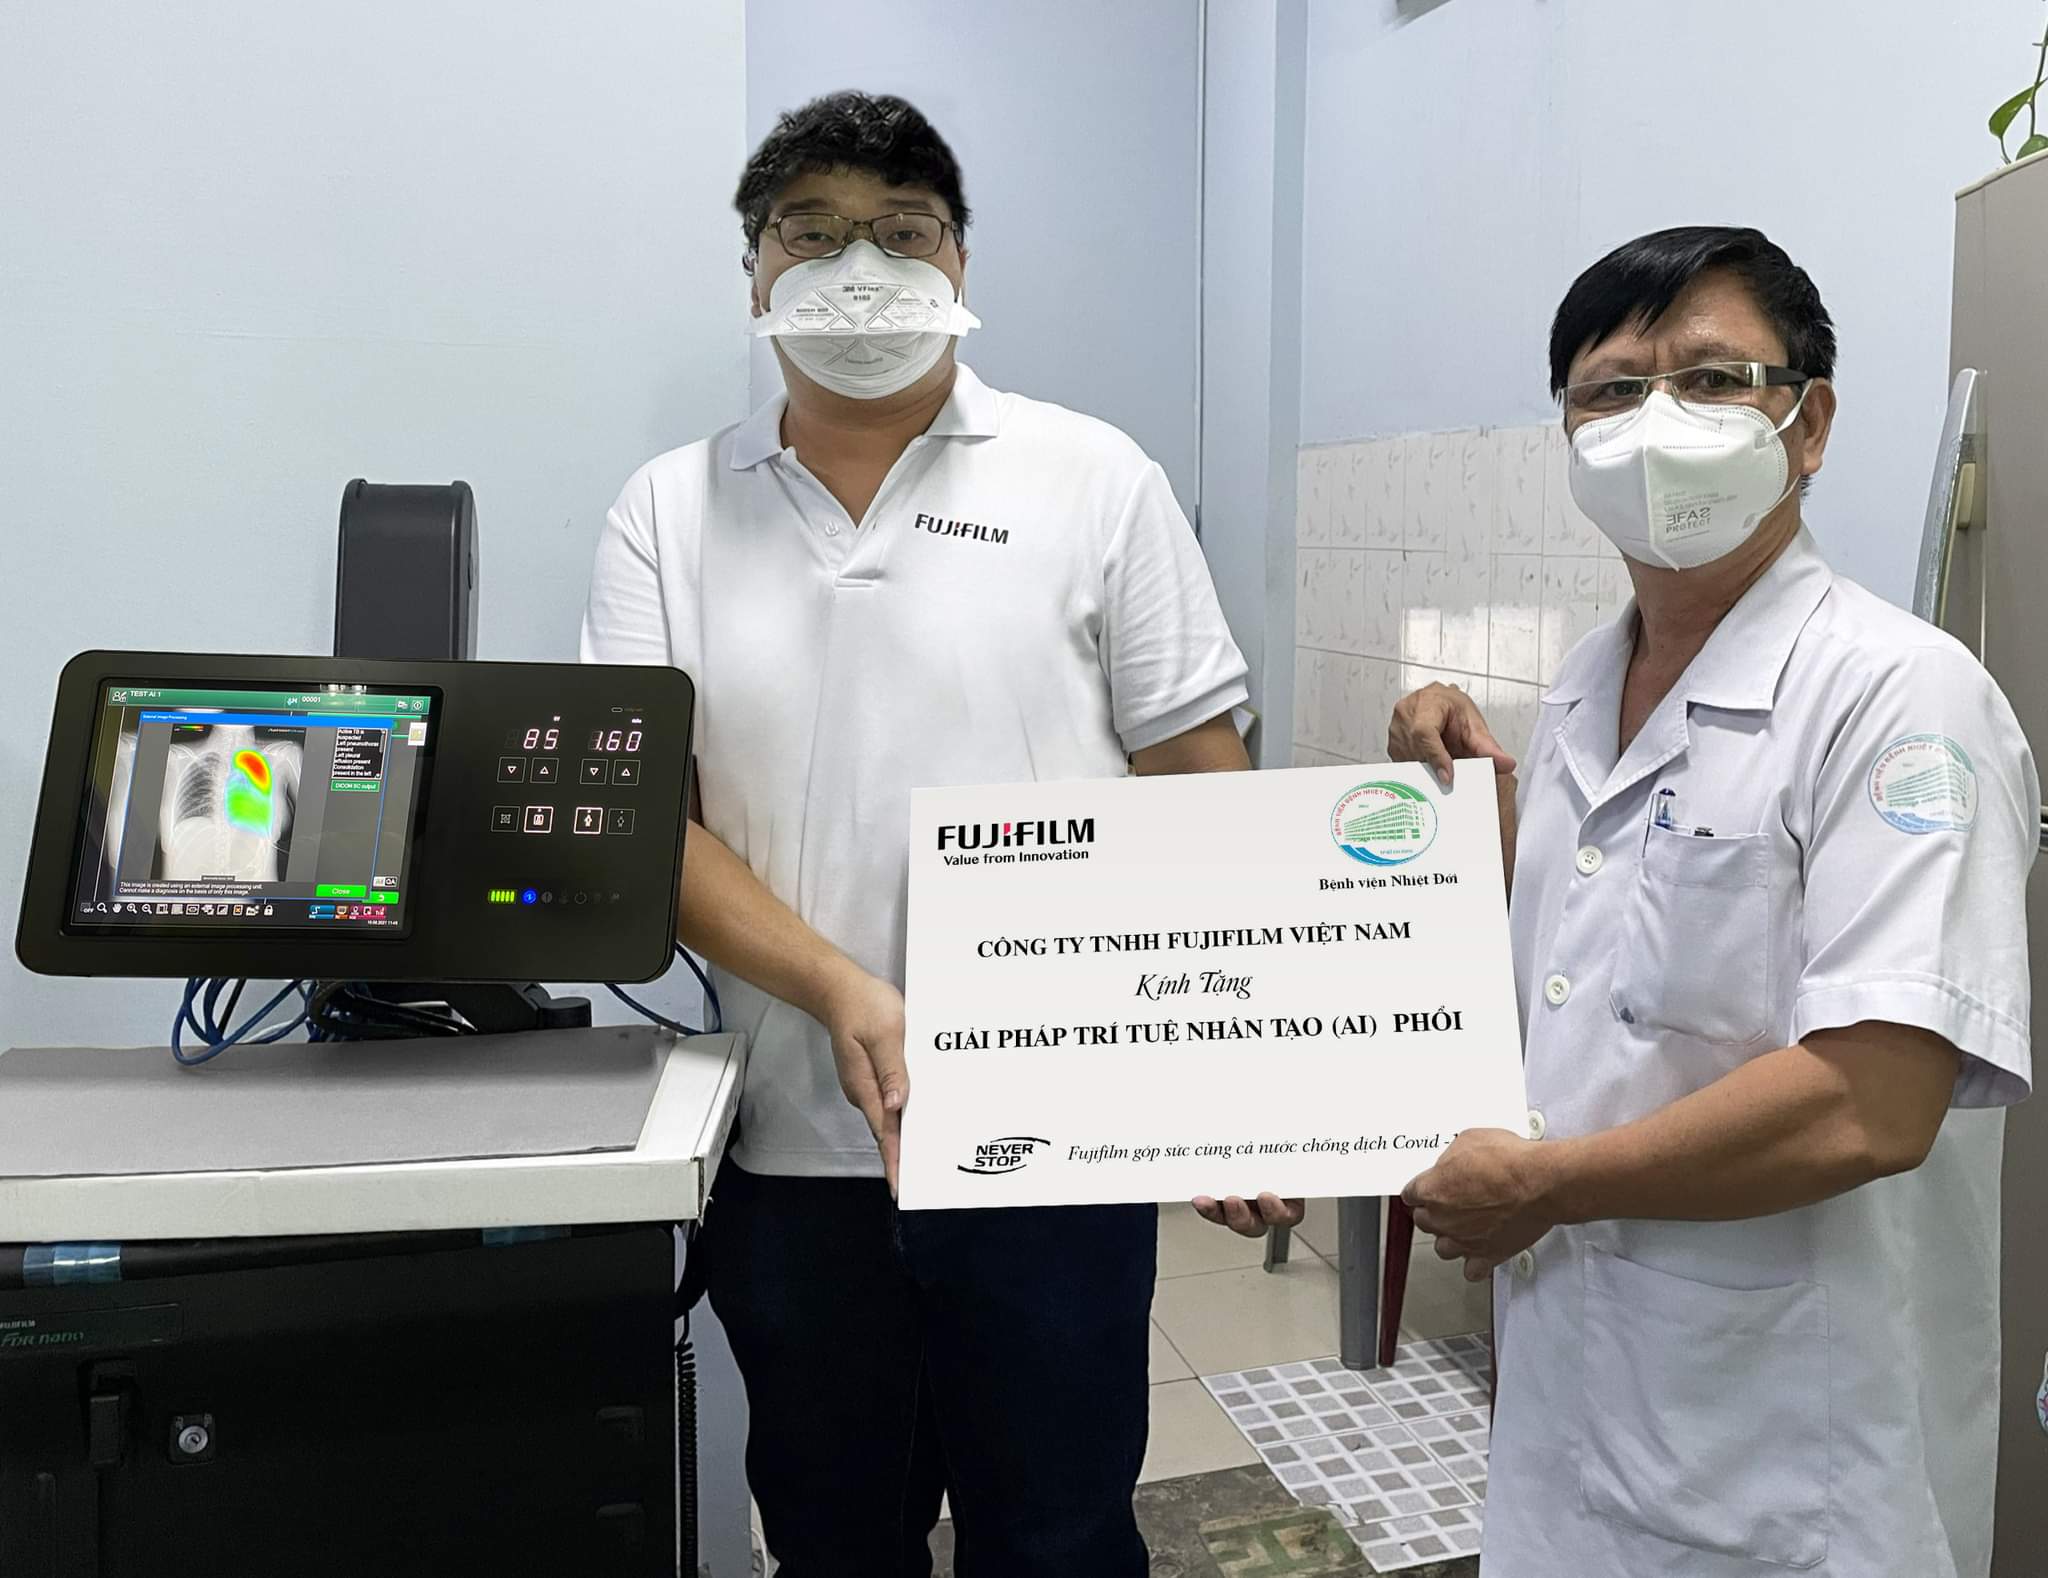 Fujifilm trao tặng Bệnh viện Phạm Ngọc Thạch TP Hồ Chí Minh giải pháp trí tuệ nhân tạo (AI) phổi 